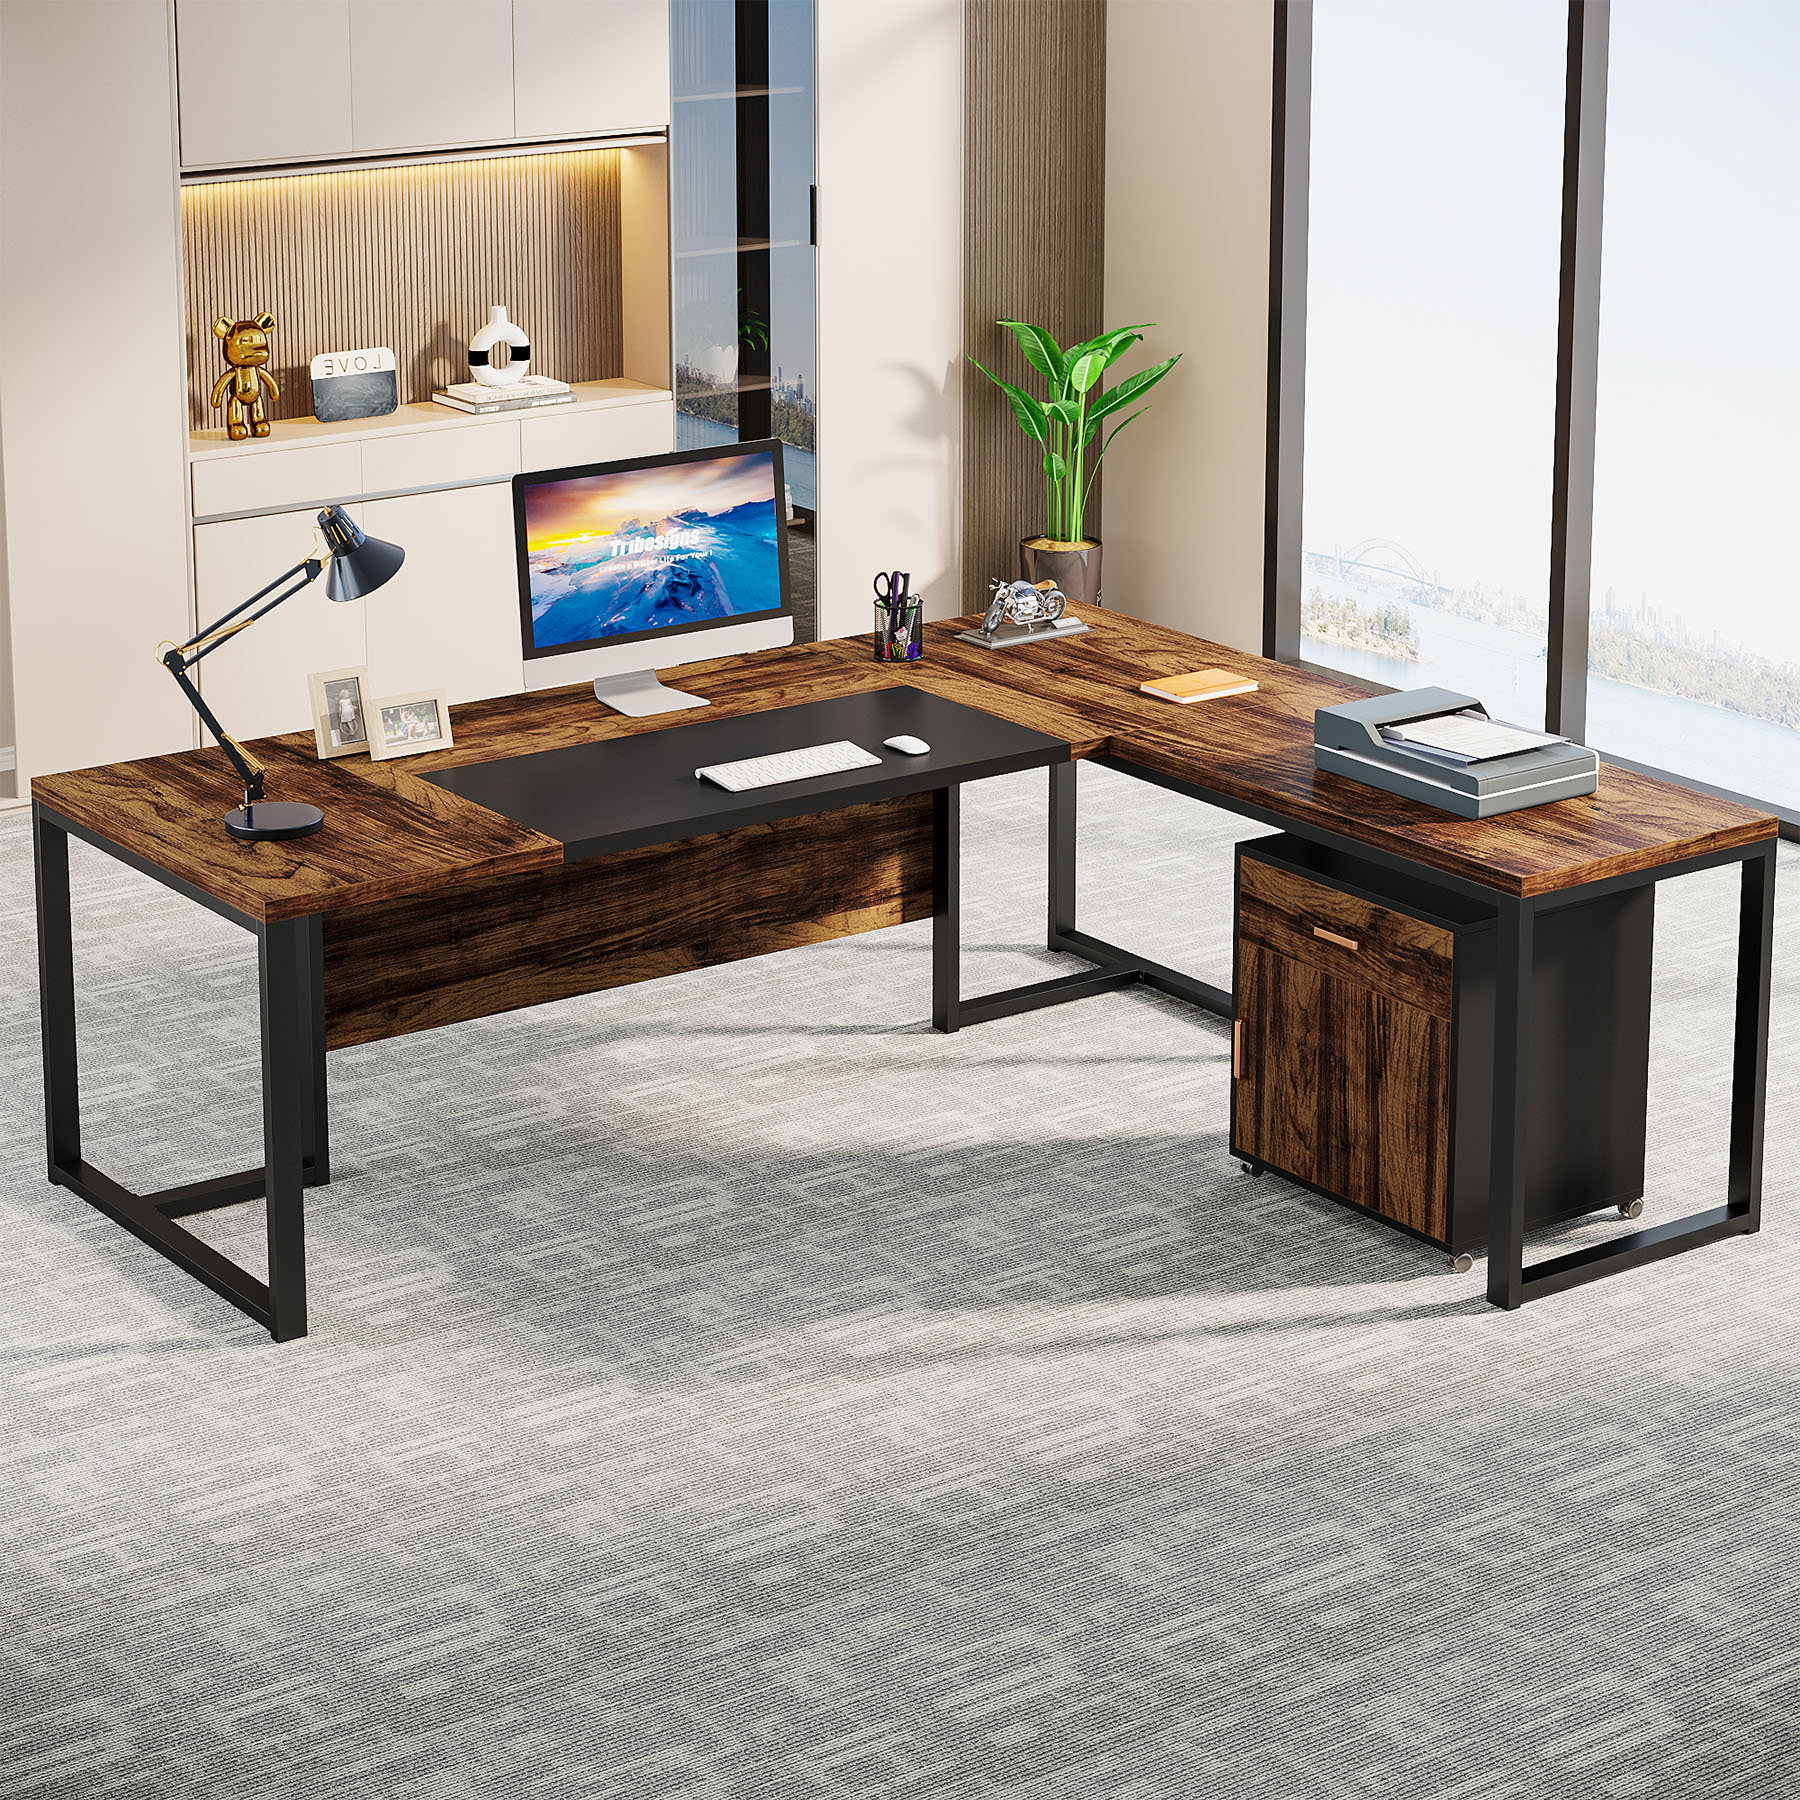 https://assets.wfcdn.com/im/25935791/compr-r85/2516/251672860/71-corner-desk-with-file-cabinet-large-l-shaped-desk-with-mobile-filing-cabinet-for-home-office.jpg